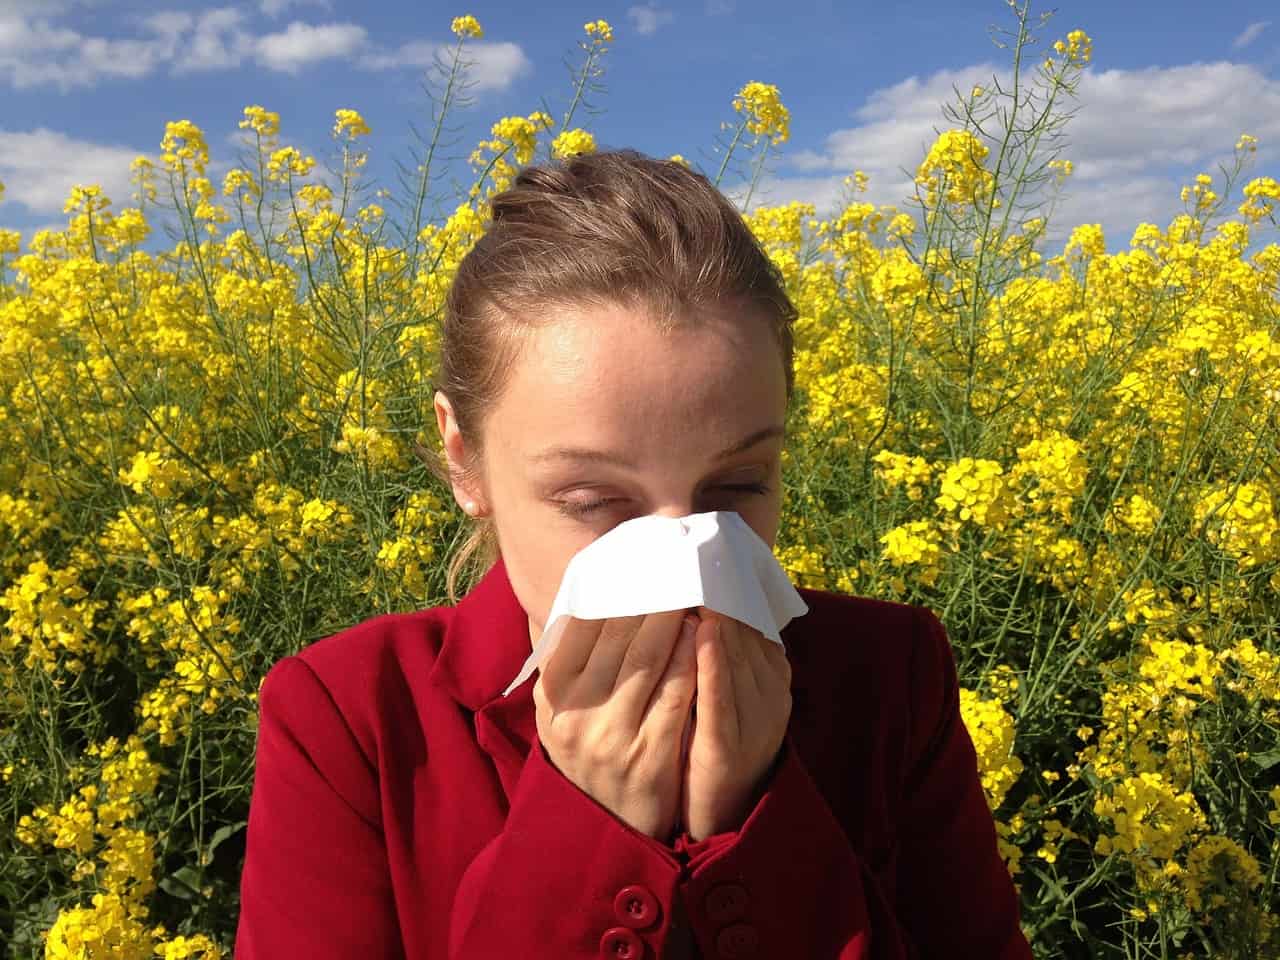 Allergie e intolleranze alimentari: come scoprirle e come conviverci?